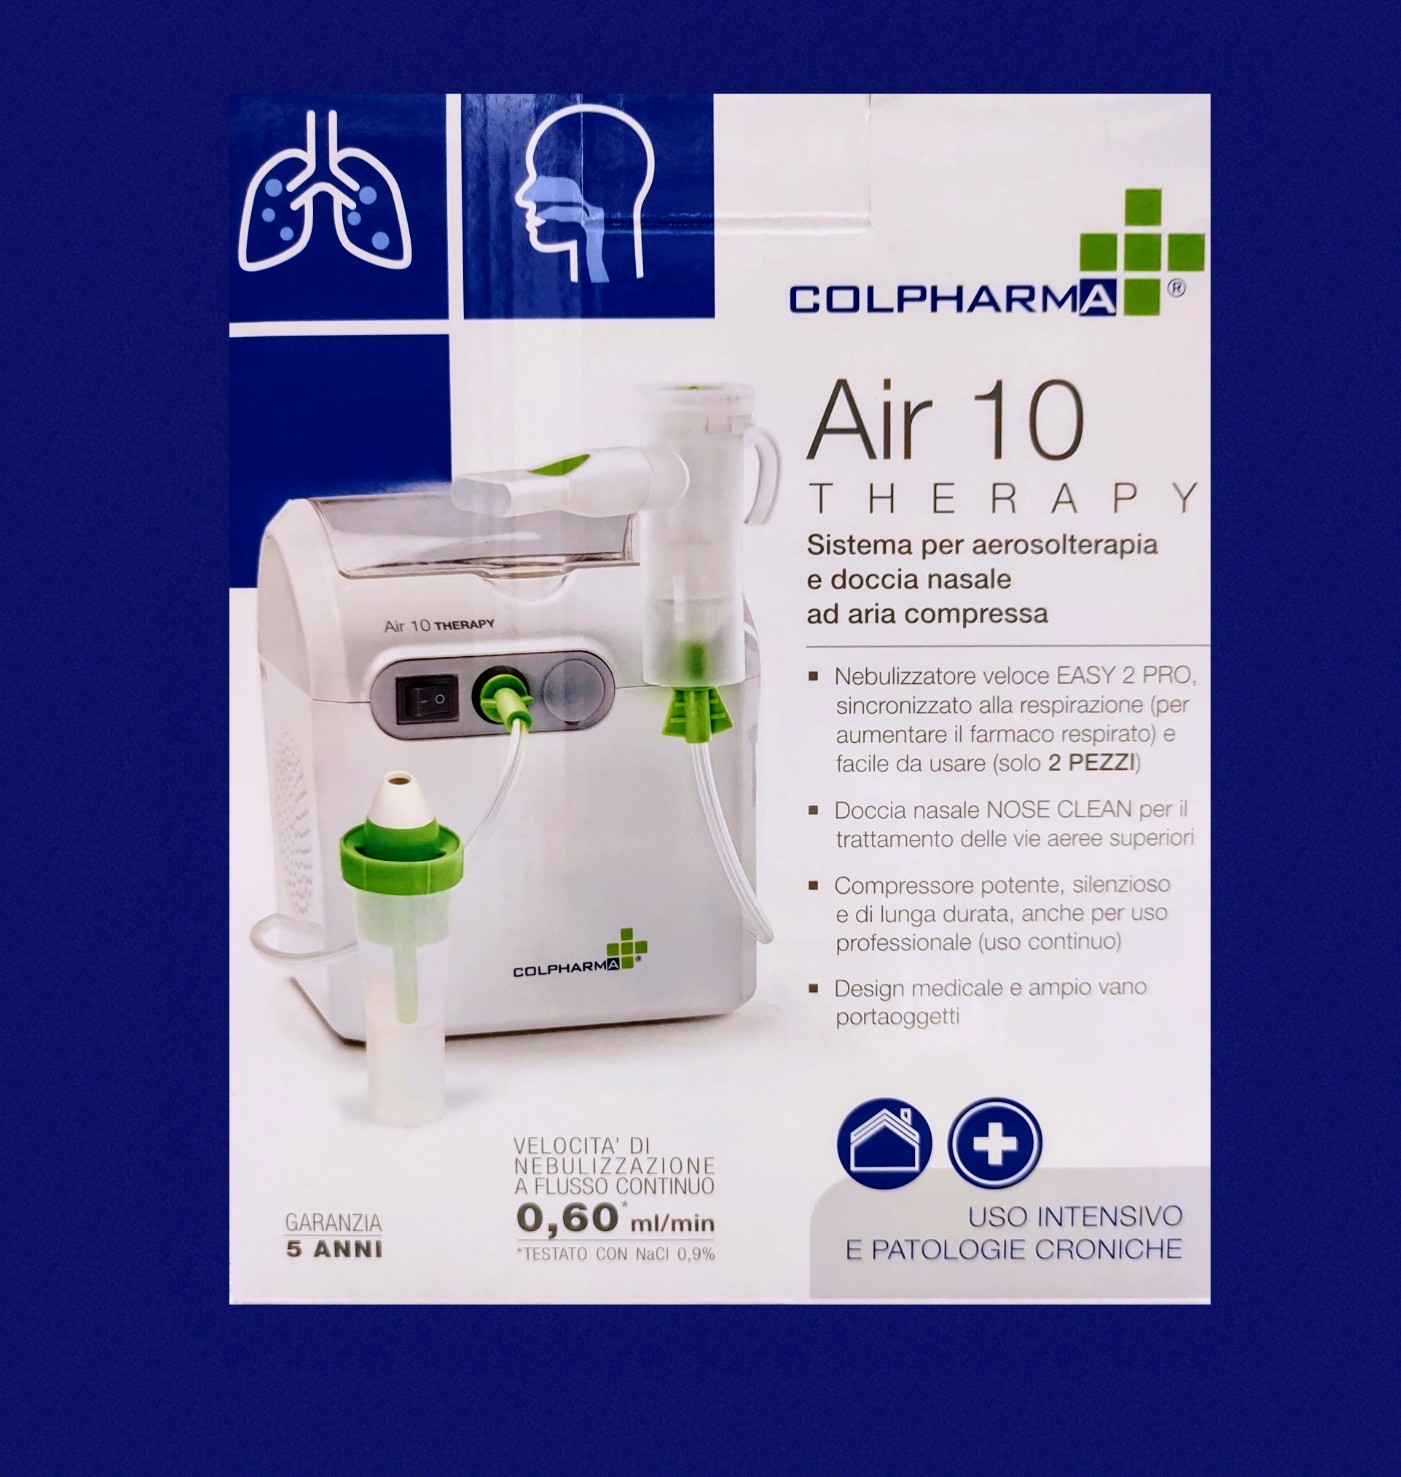 Colpharma apparecchio per aerosolterapia in farmacia pelizzo a udine